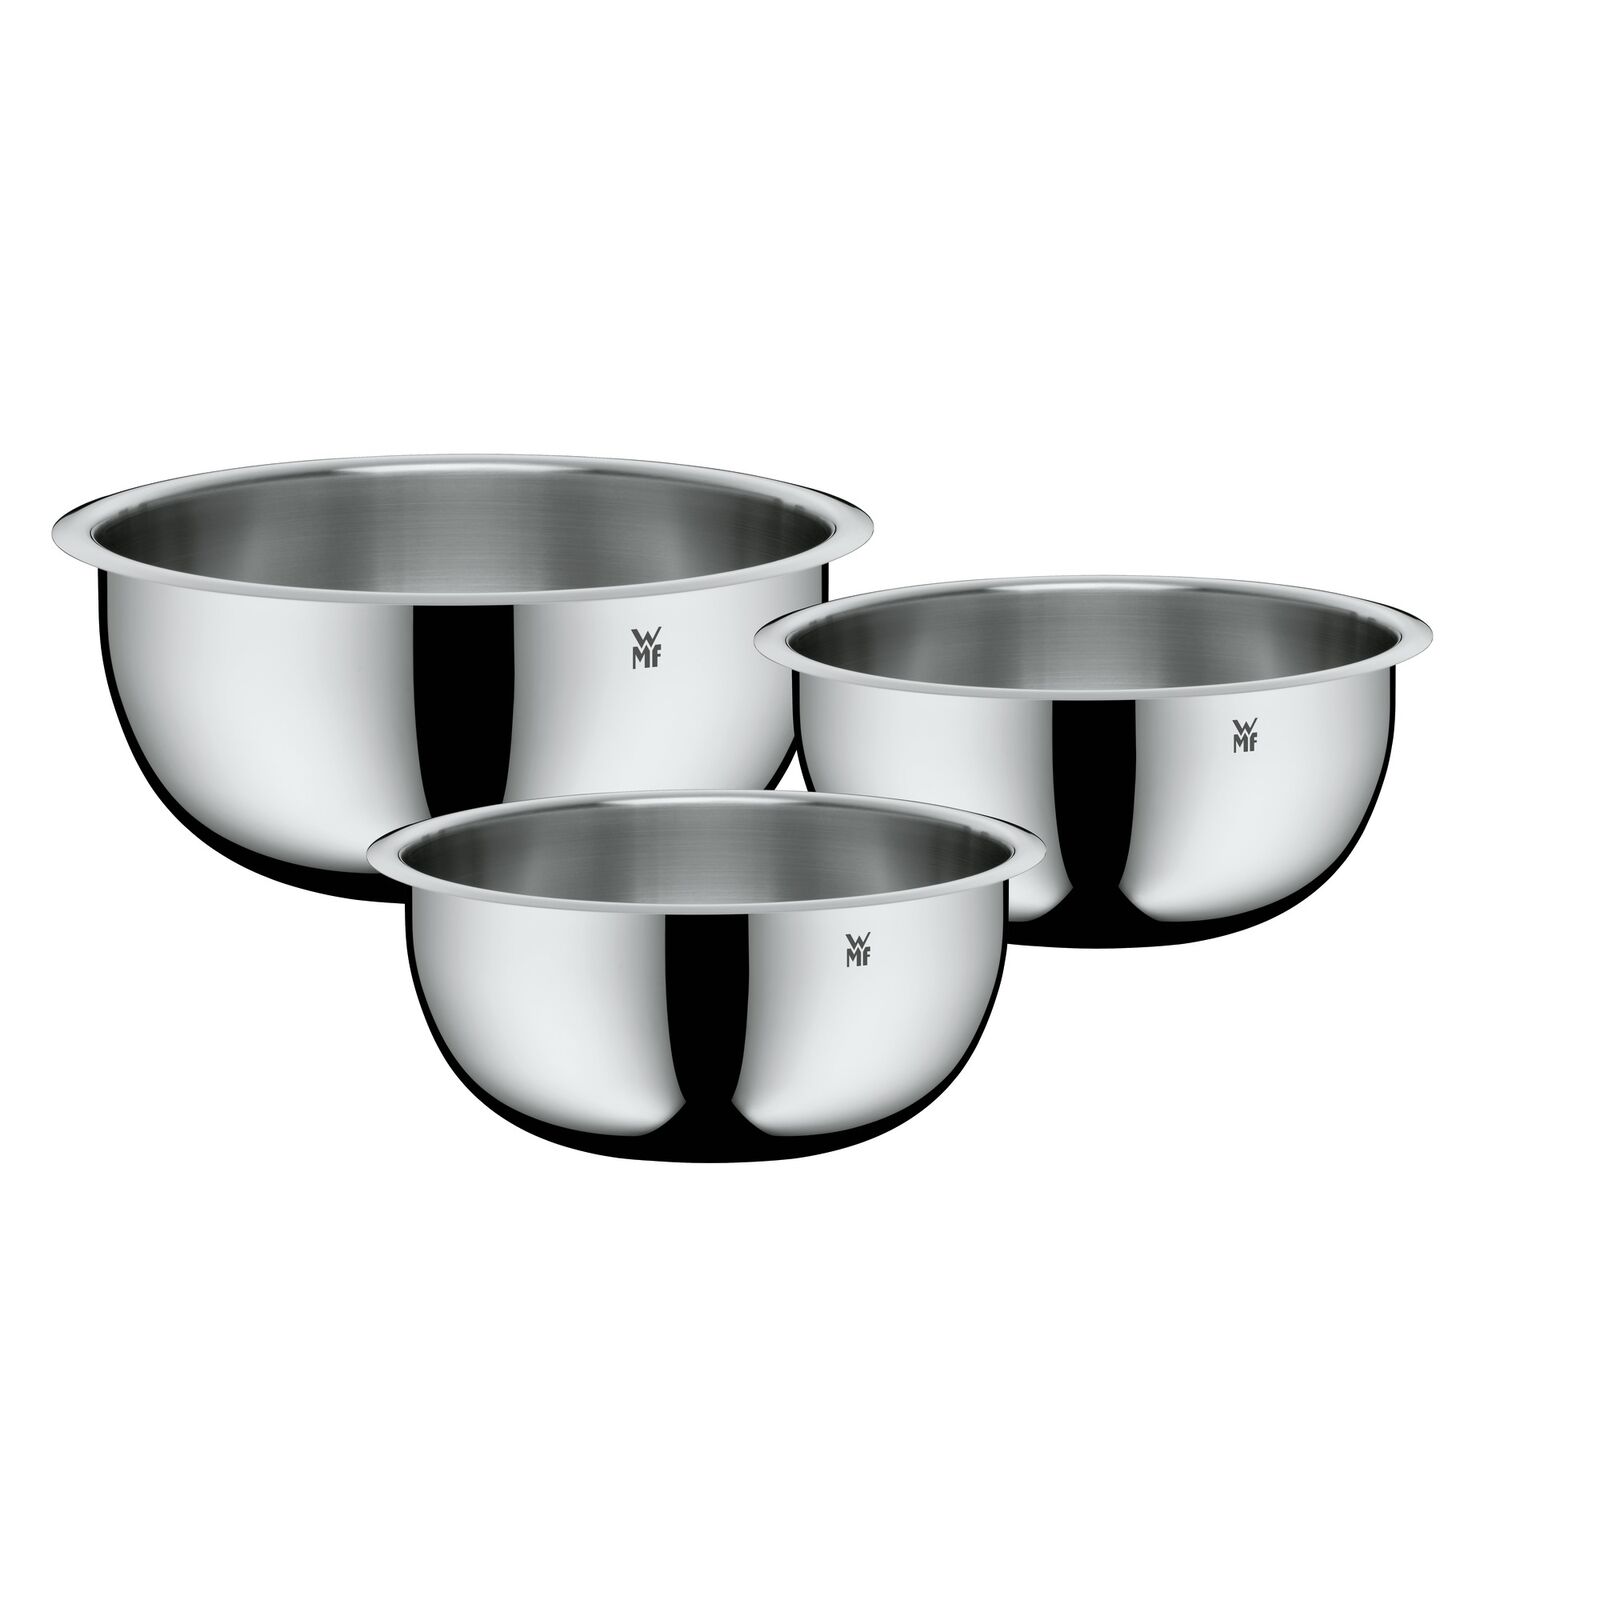 Bild zu 3-teiliges WMF Küchenschüssel-Set Function Bowls für 29,99€ (Vergleich: 49,99€)